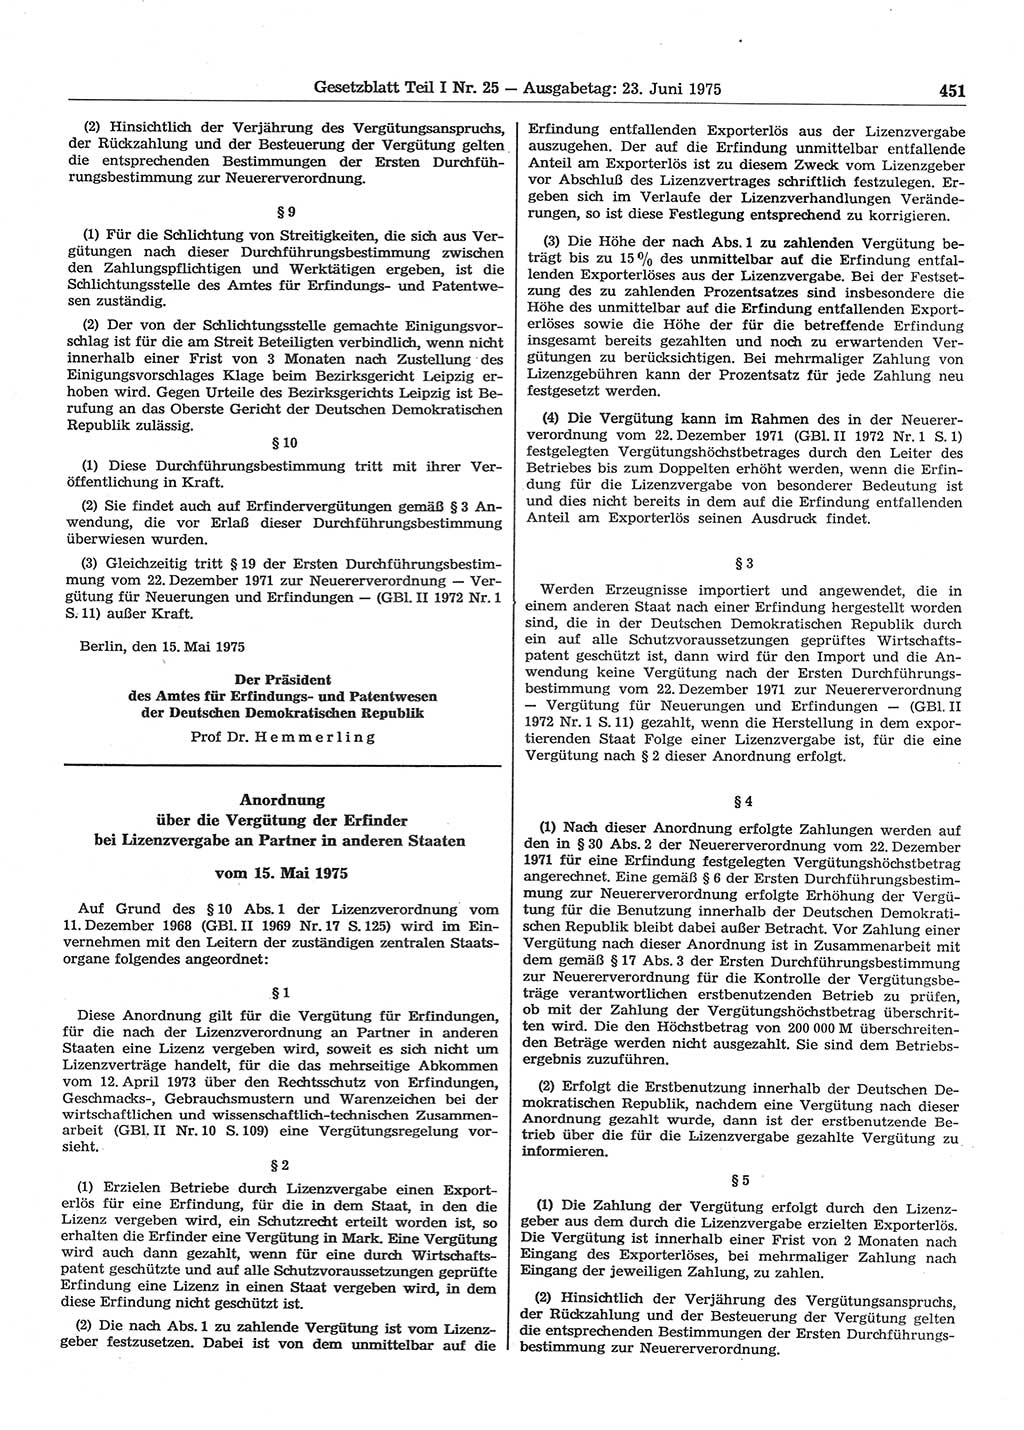 Gesetzblatt (GBl.) der Deutschen Demokratischen Republik (DDR) Teil Ⅰ 1975, Seite 451 (GBl. DDR Ⅰ 1975, S. 451)